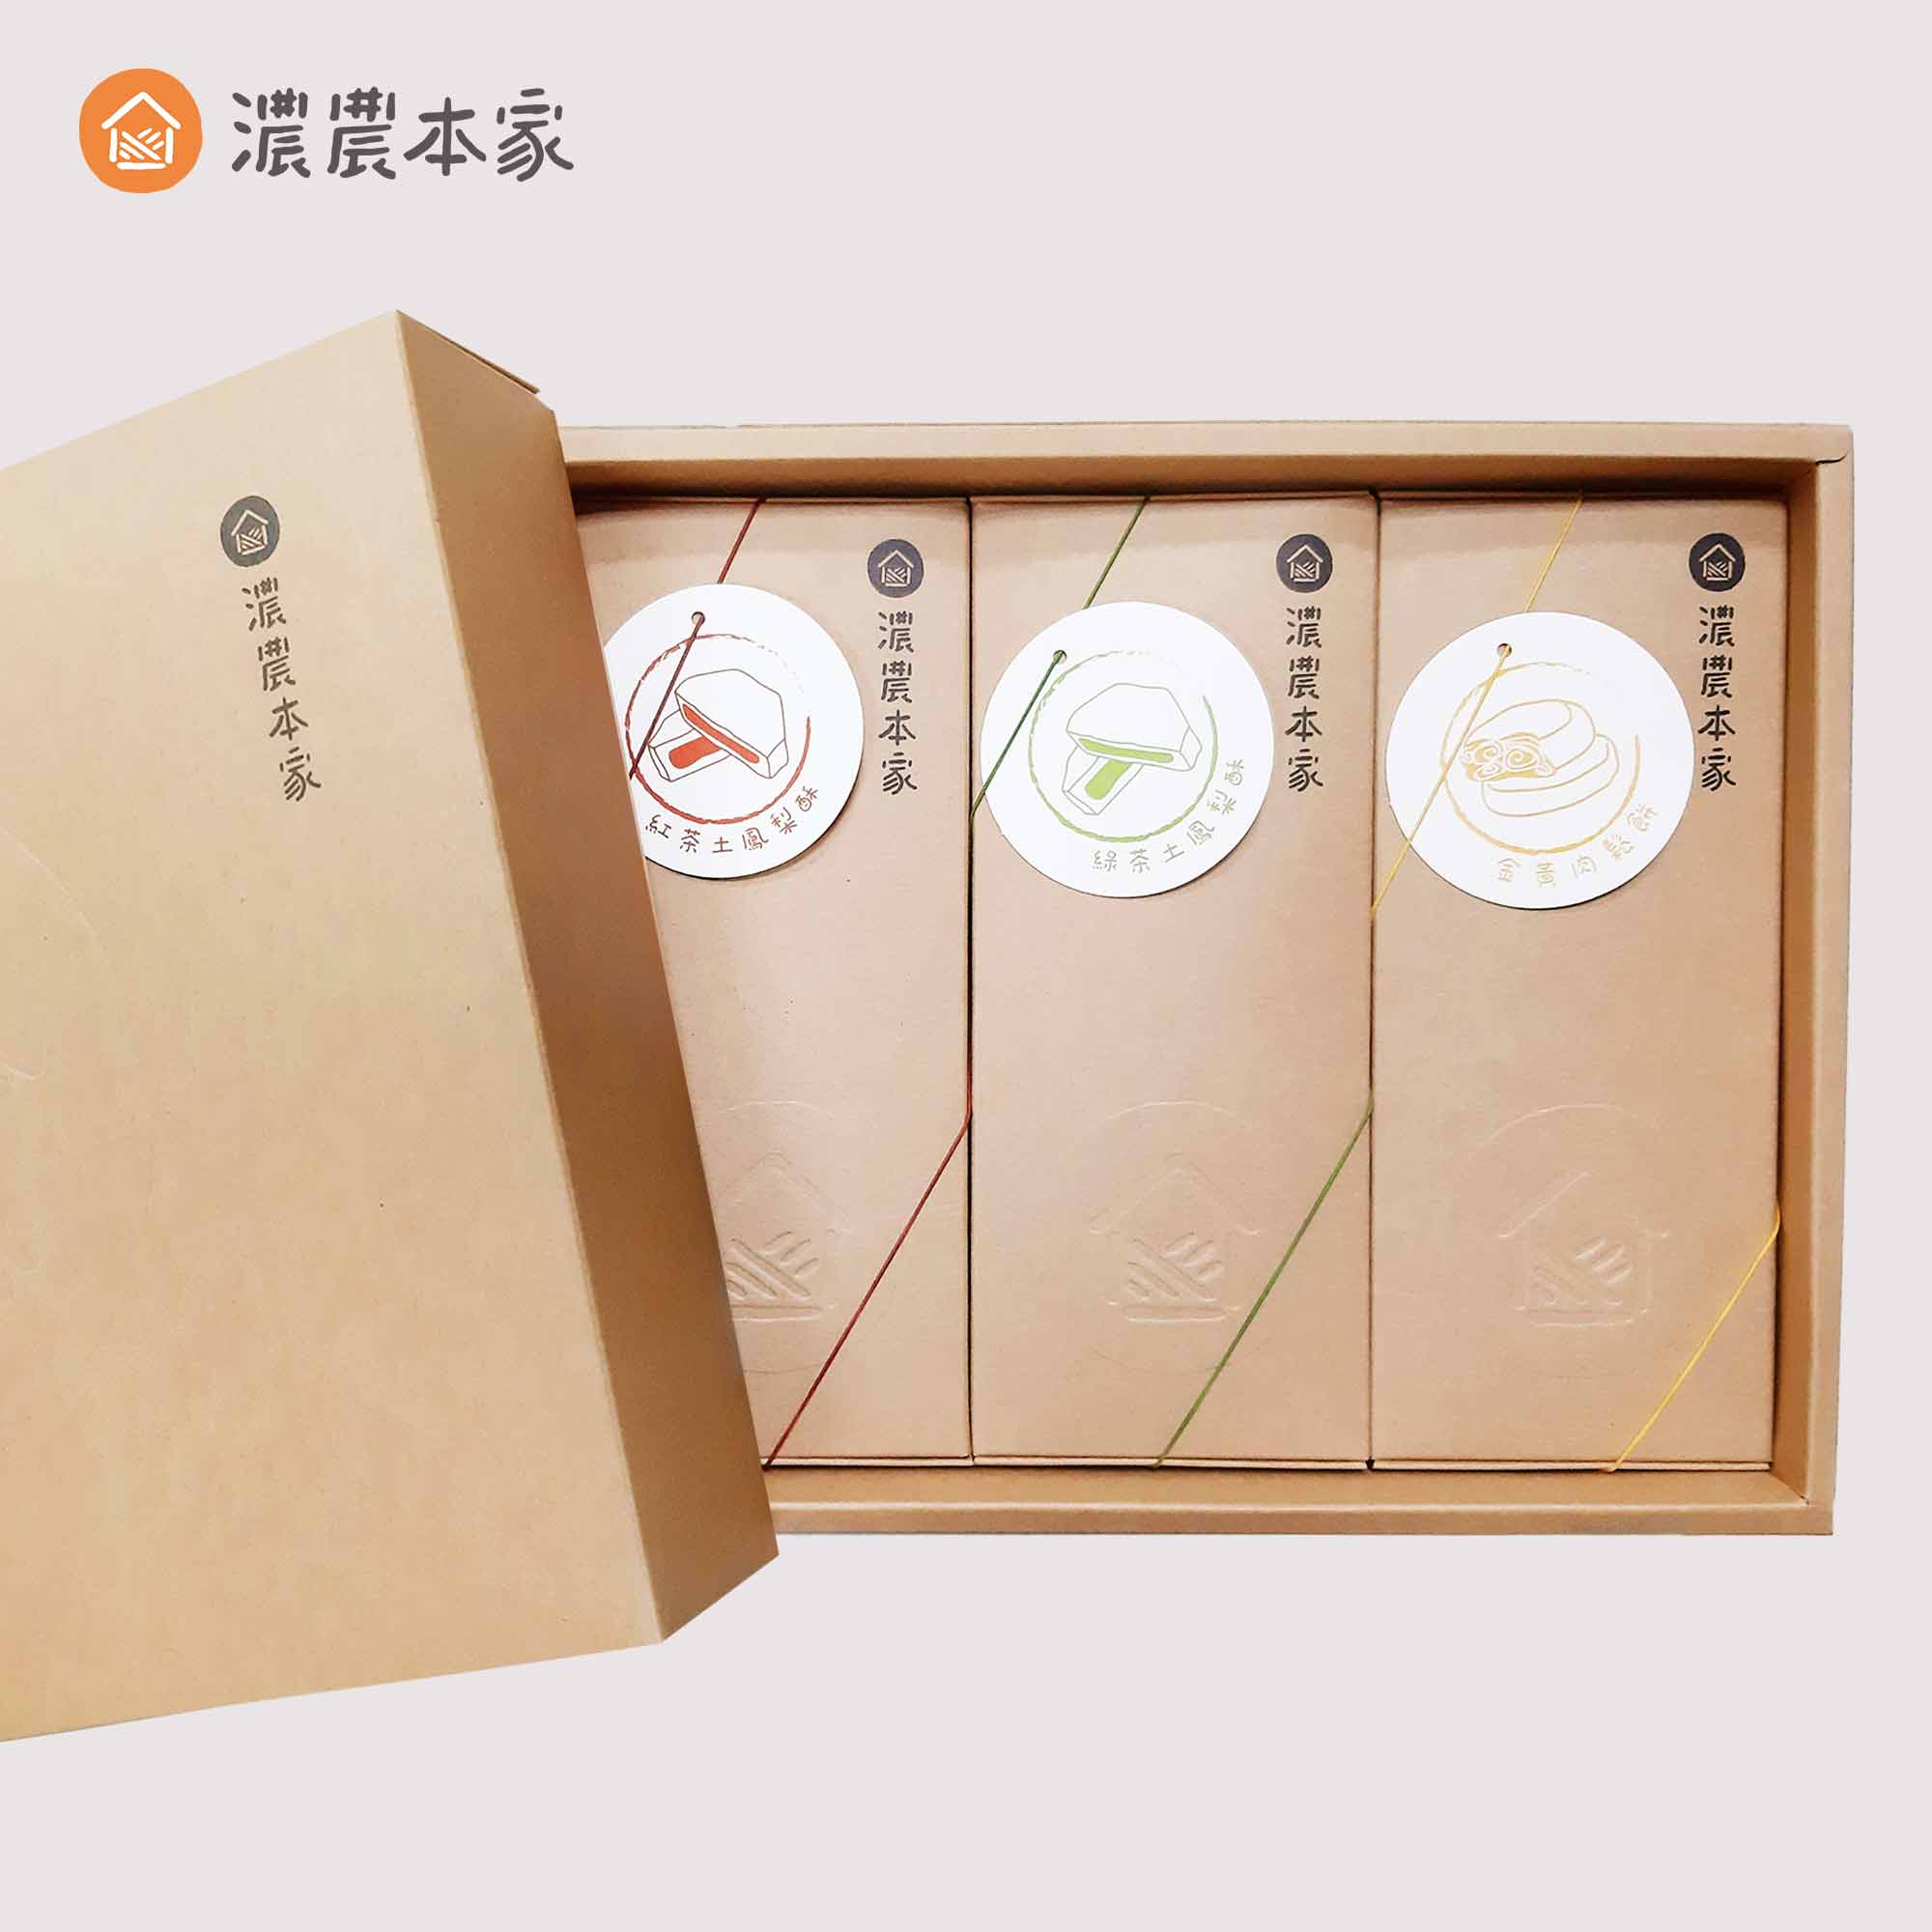 香港人來台灣必買的台灣特色手信推薦土鳳梨酥禮盒